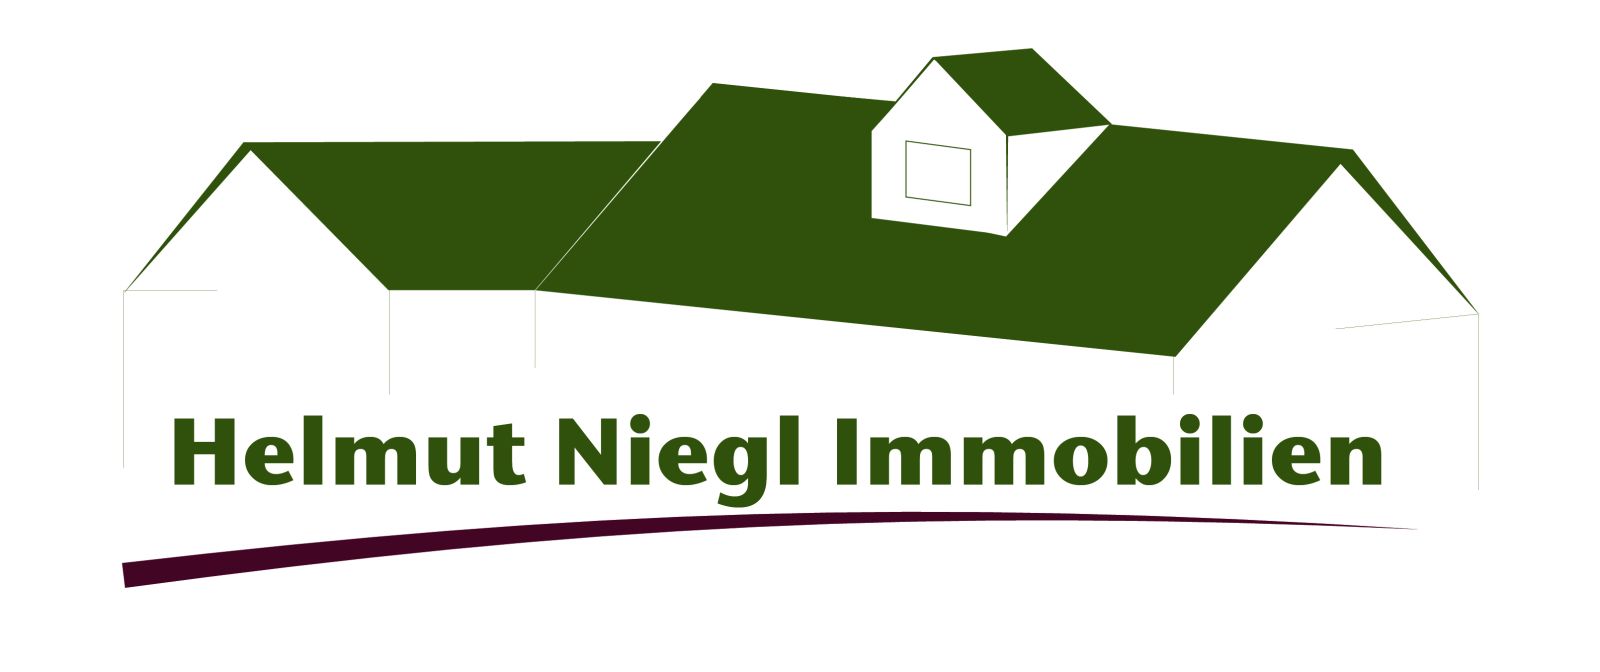 Helmut Niegl Immobilien - Ihr Immobilienmakler in Sachsen-Anhalt im Landkreis Wittenberg